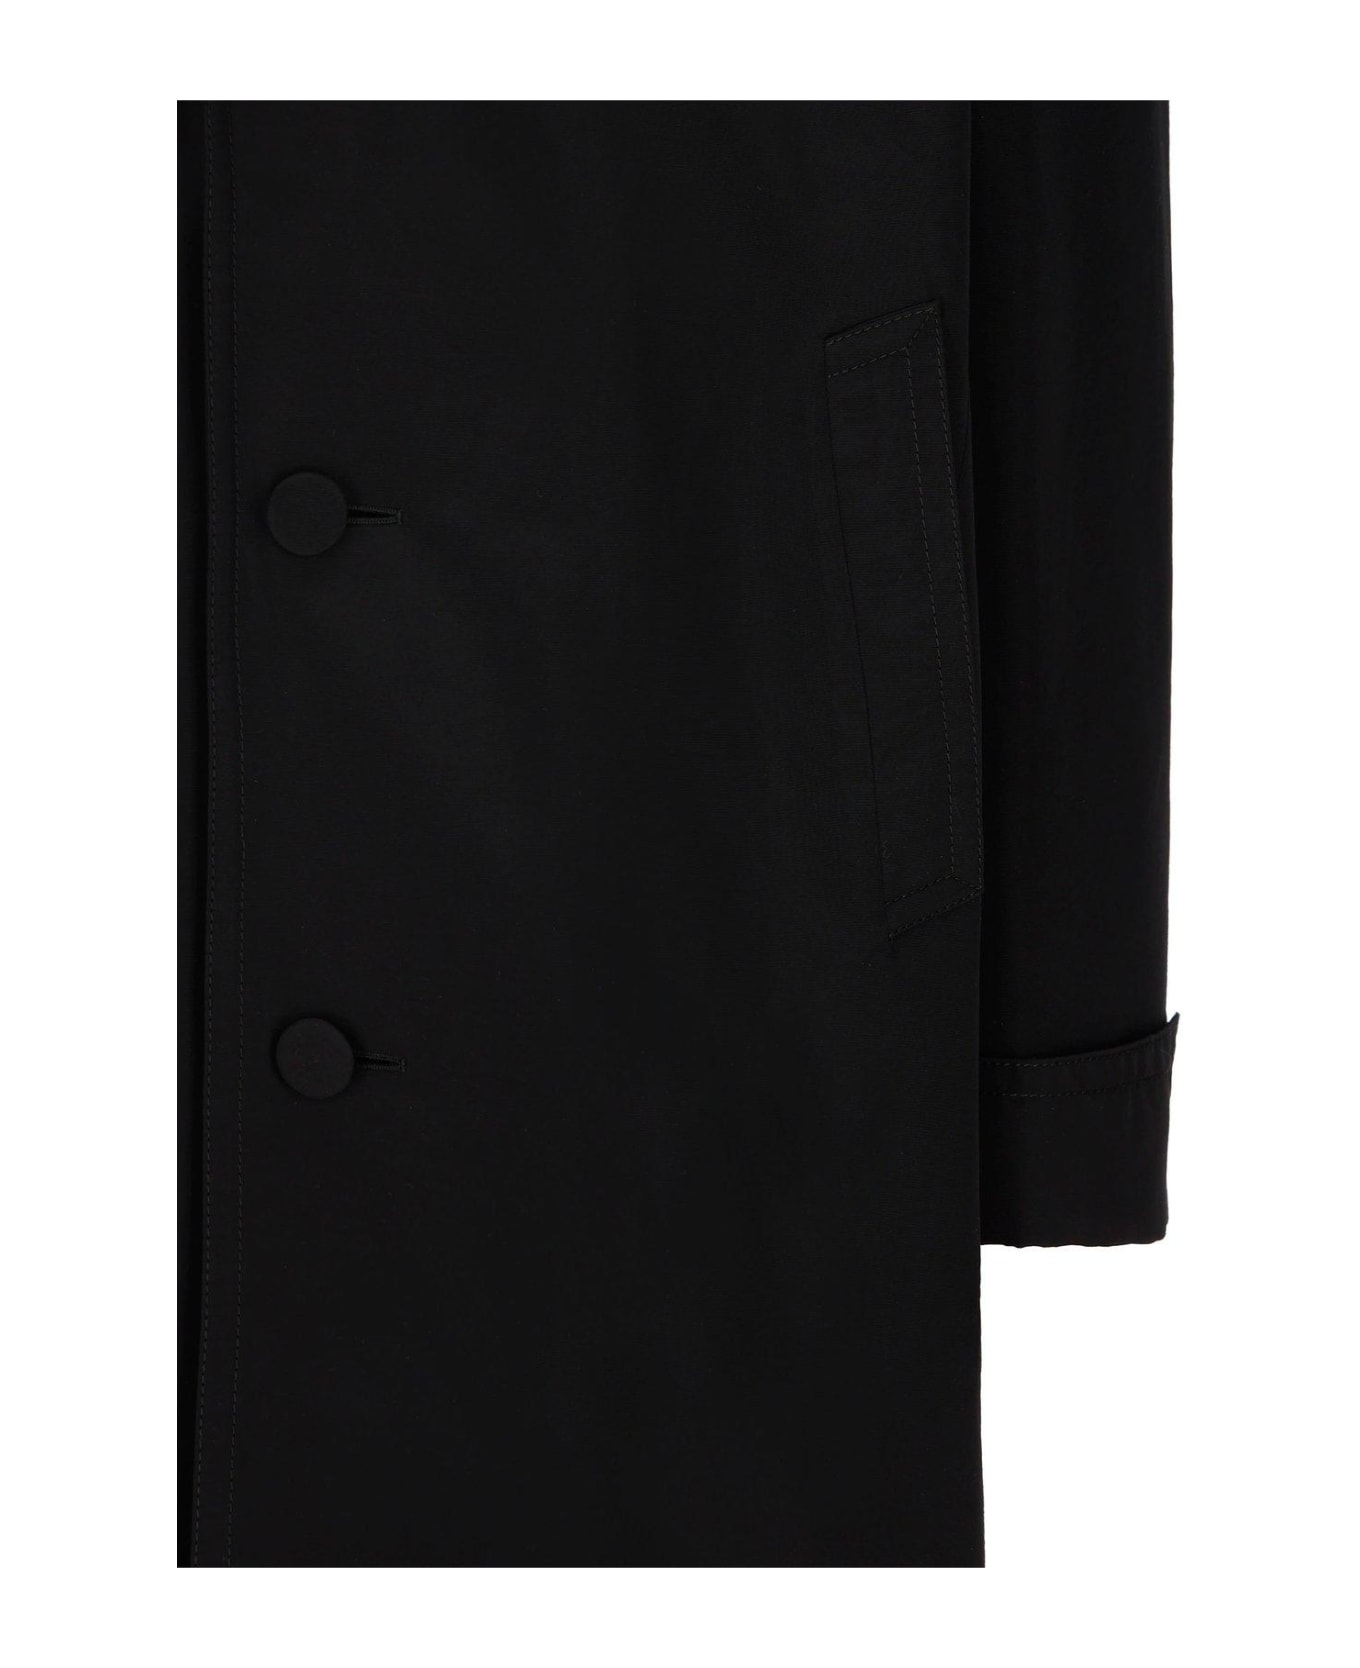 Gucci Cotton Popline Coat - Black